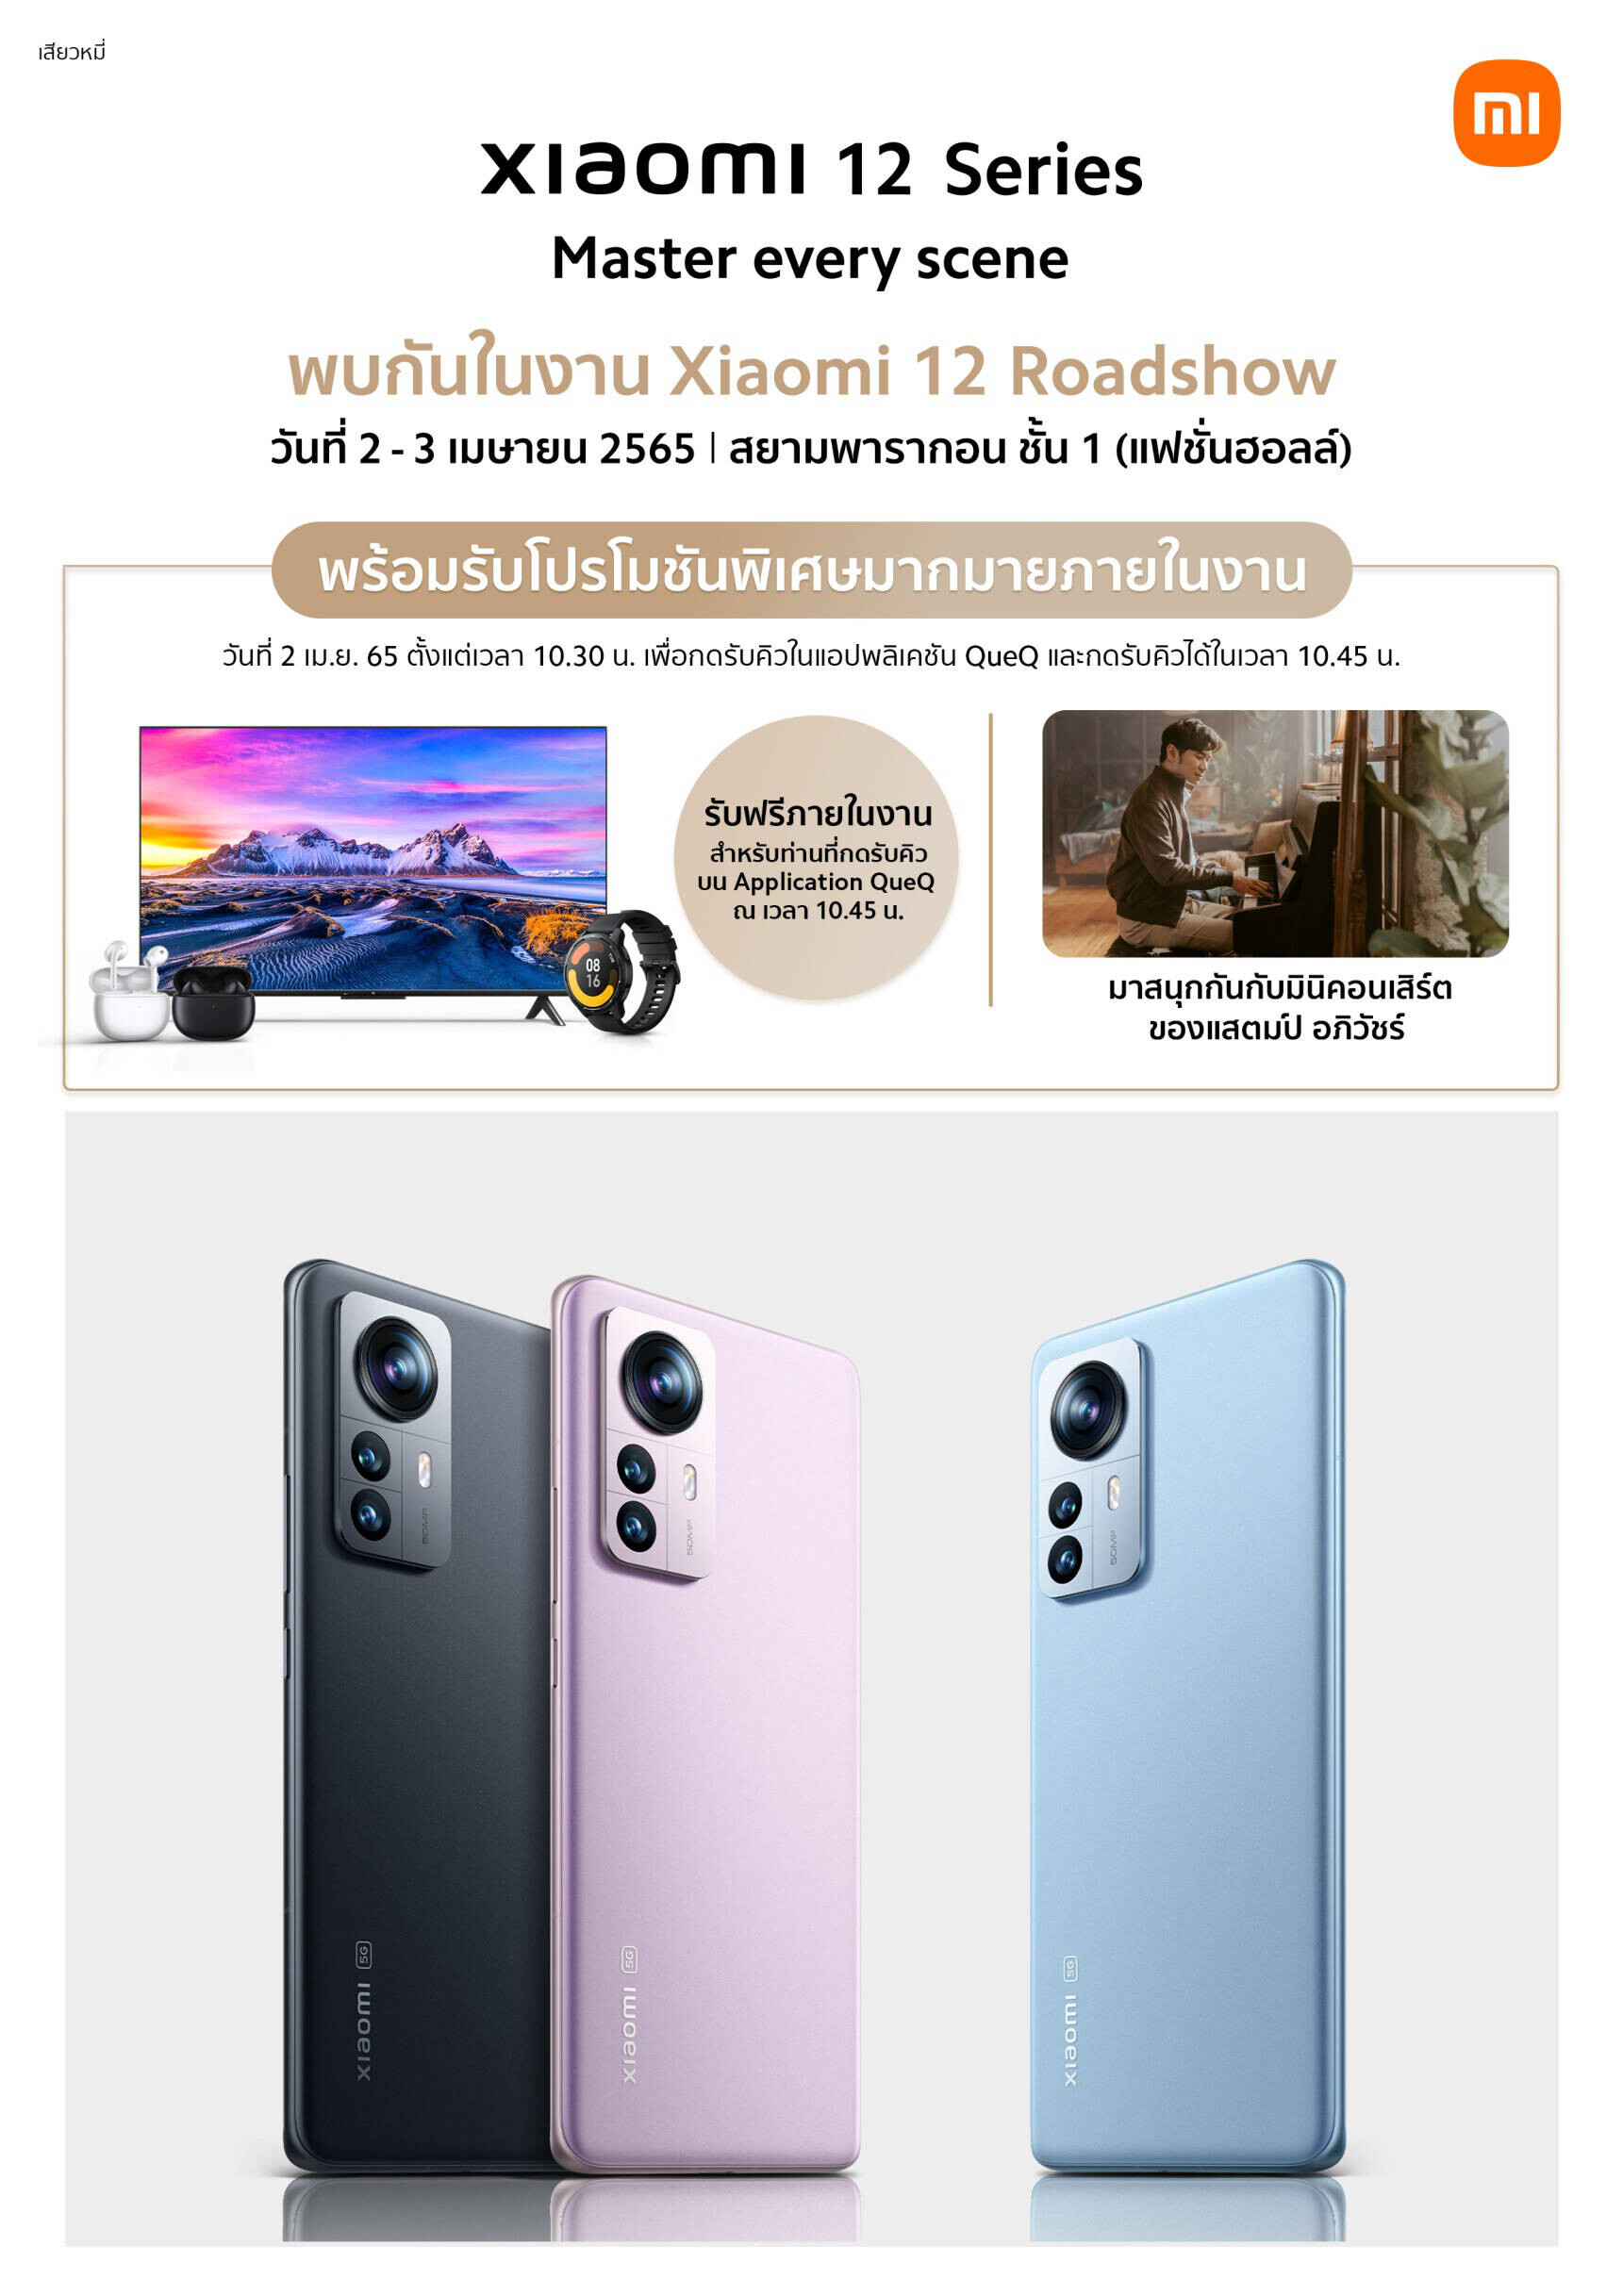 เสียวหมี่เตรียมจัดงาน "Xiaomi 12 Roadshow" ในวันที่ 2-3 เม.ย. นี้ ณ ศูนย์การค้าสยามพารากอน โอกาสสุดท้ายของลูกค้า Xiaomi 12 Pro และ Xiaomi 12 สำหรับการรับของขวัญสุดพิเศษ!